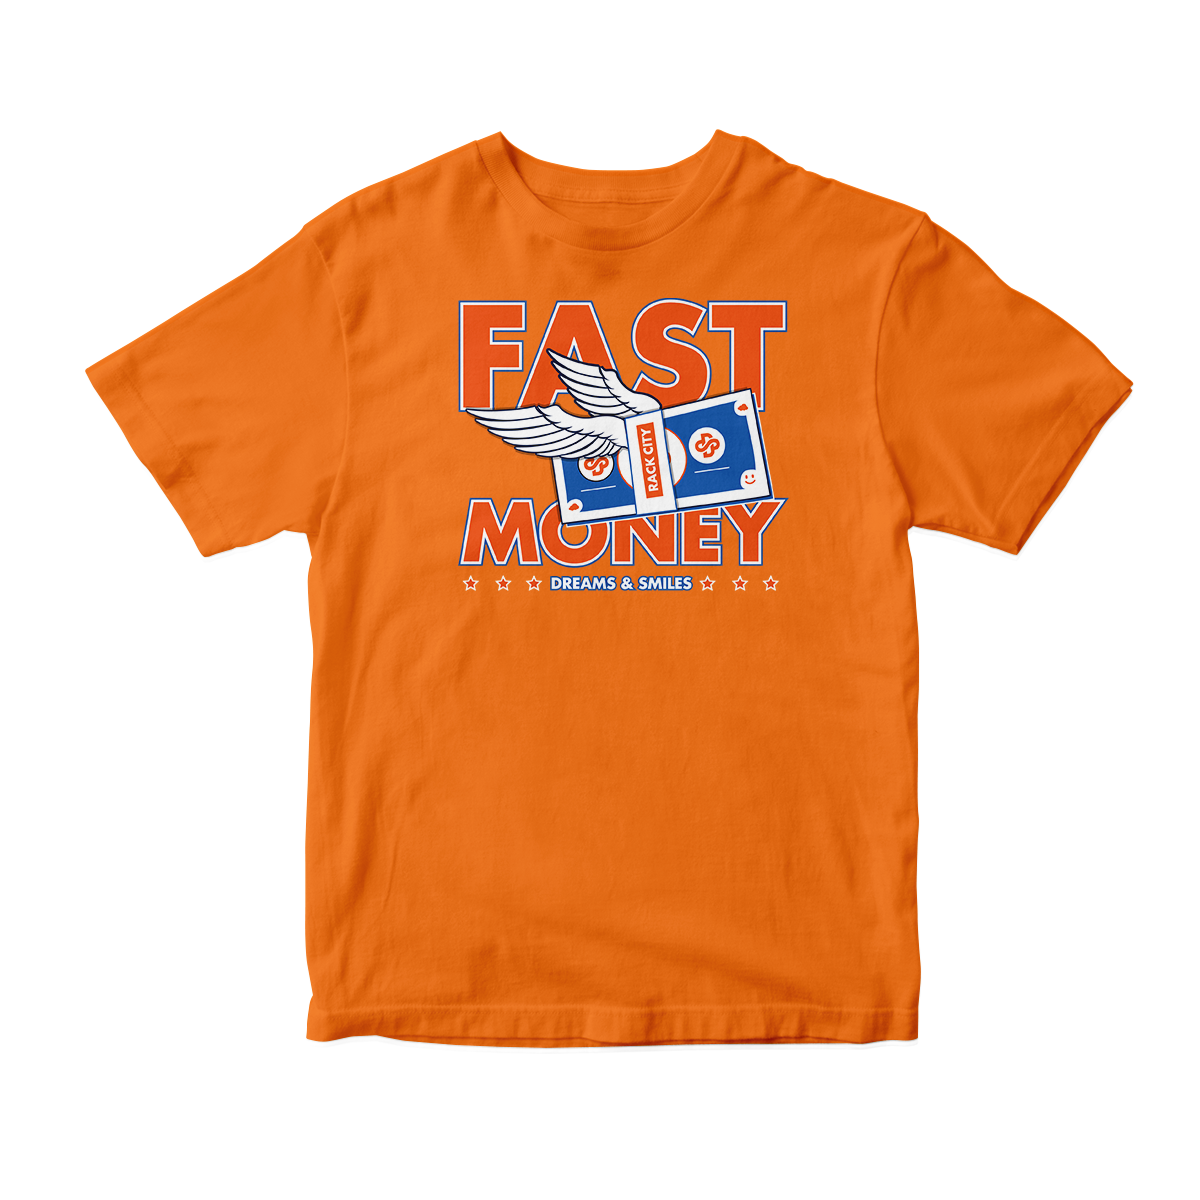 'Fast Money' in Knicks CW Unisex Short Sleeve Tee